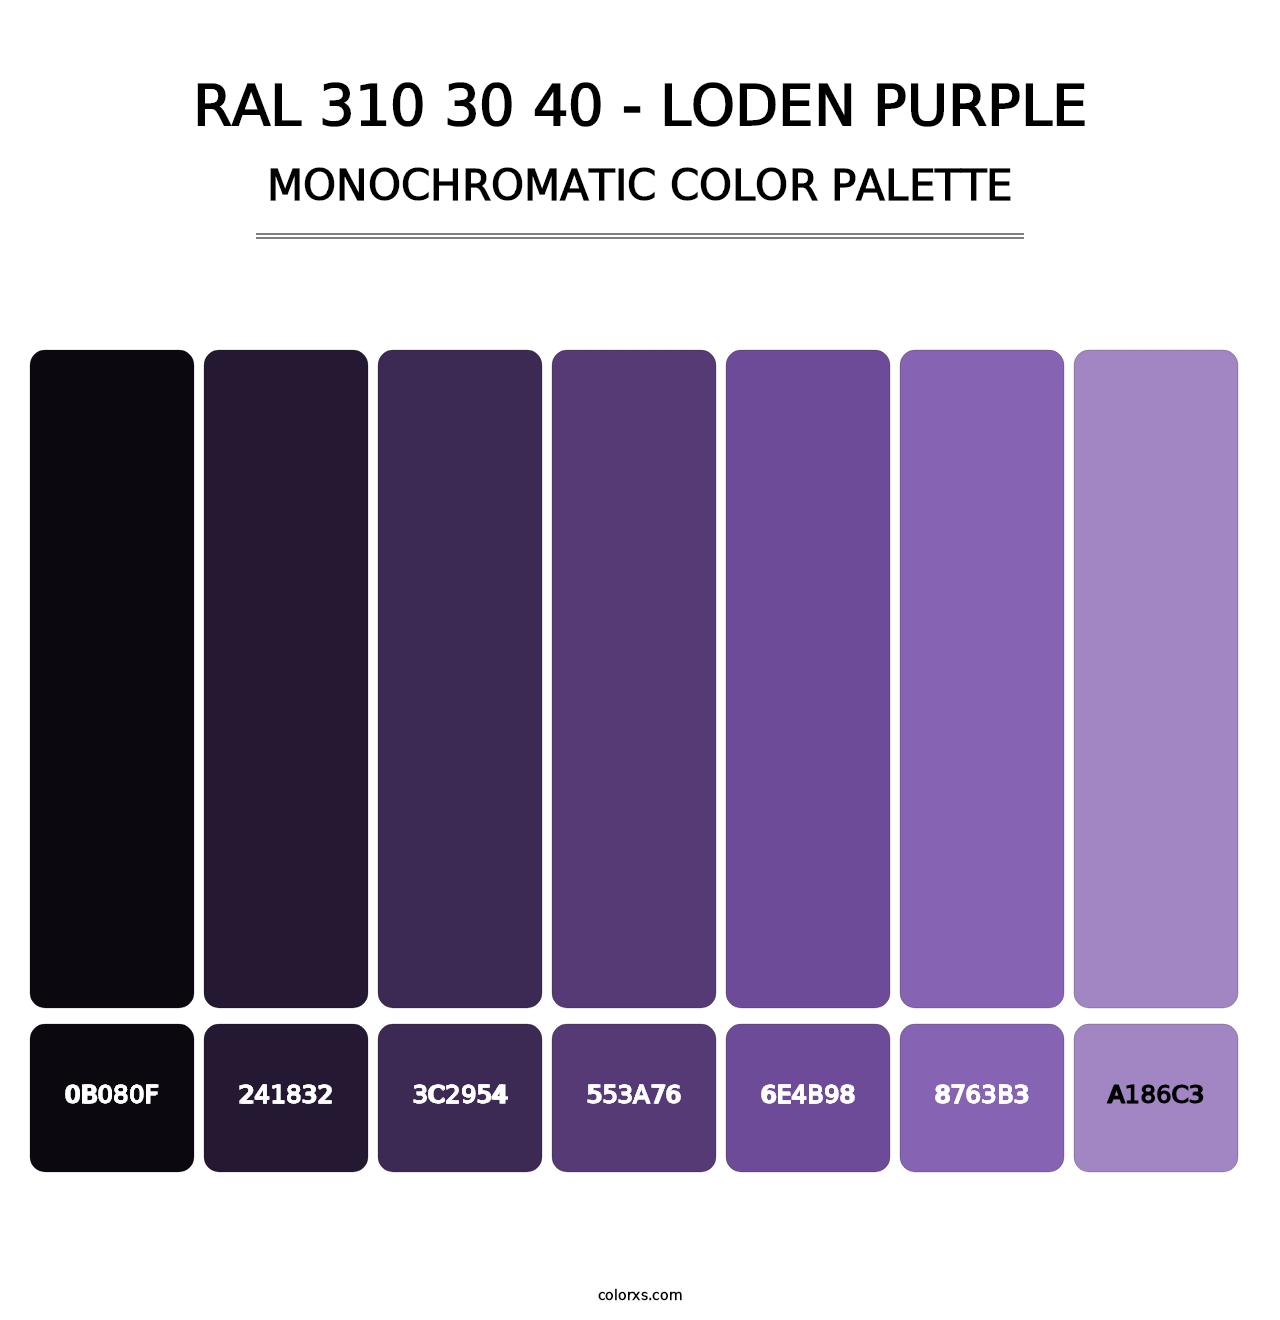 RAL 310 30 40 - Loden Purple - Monochromatic Color Palette